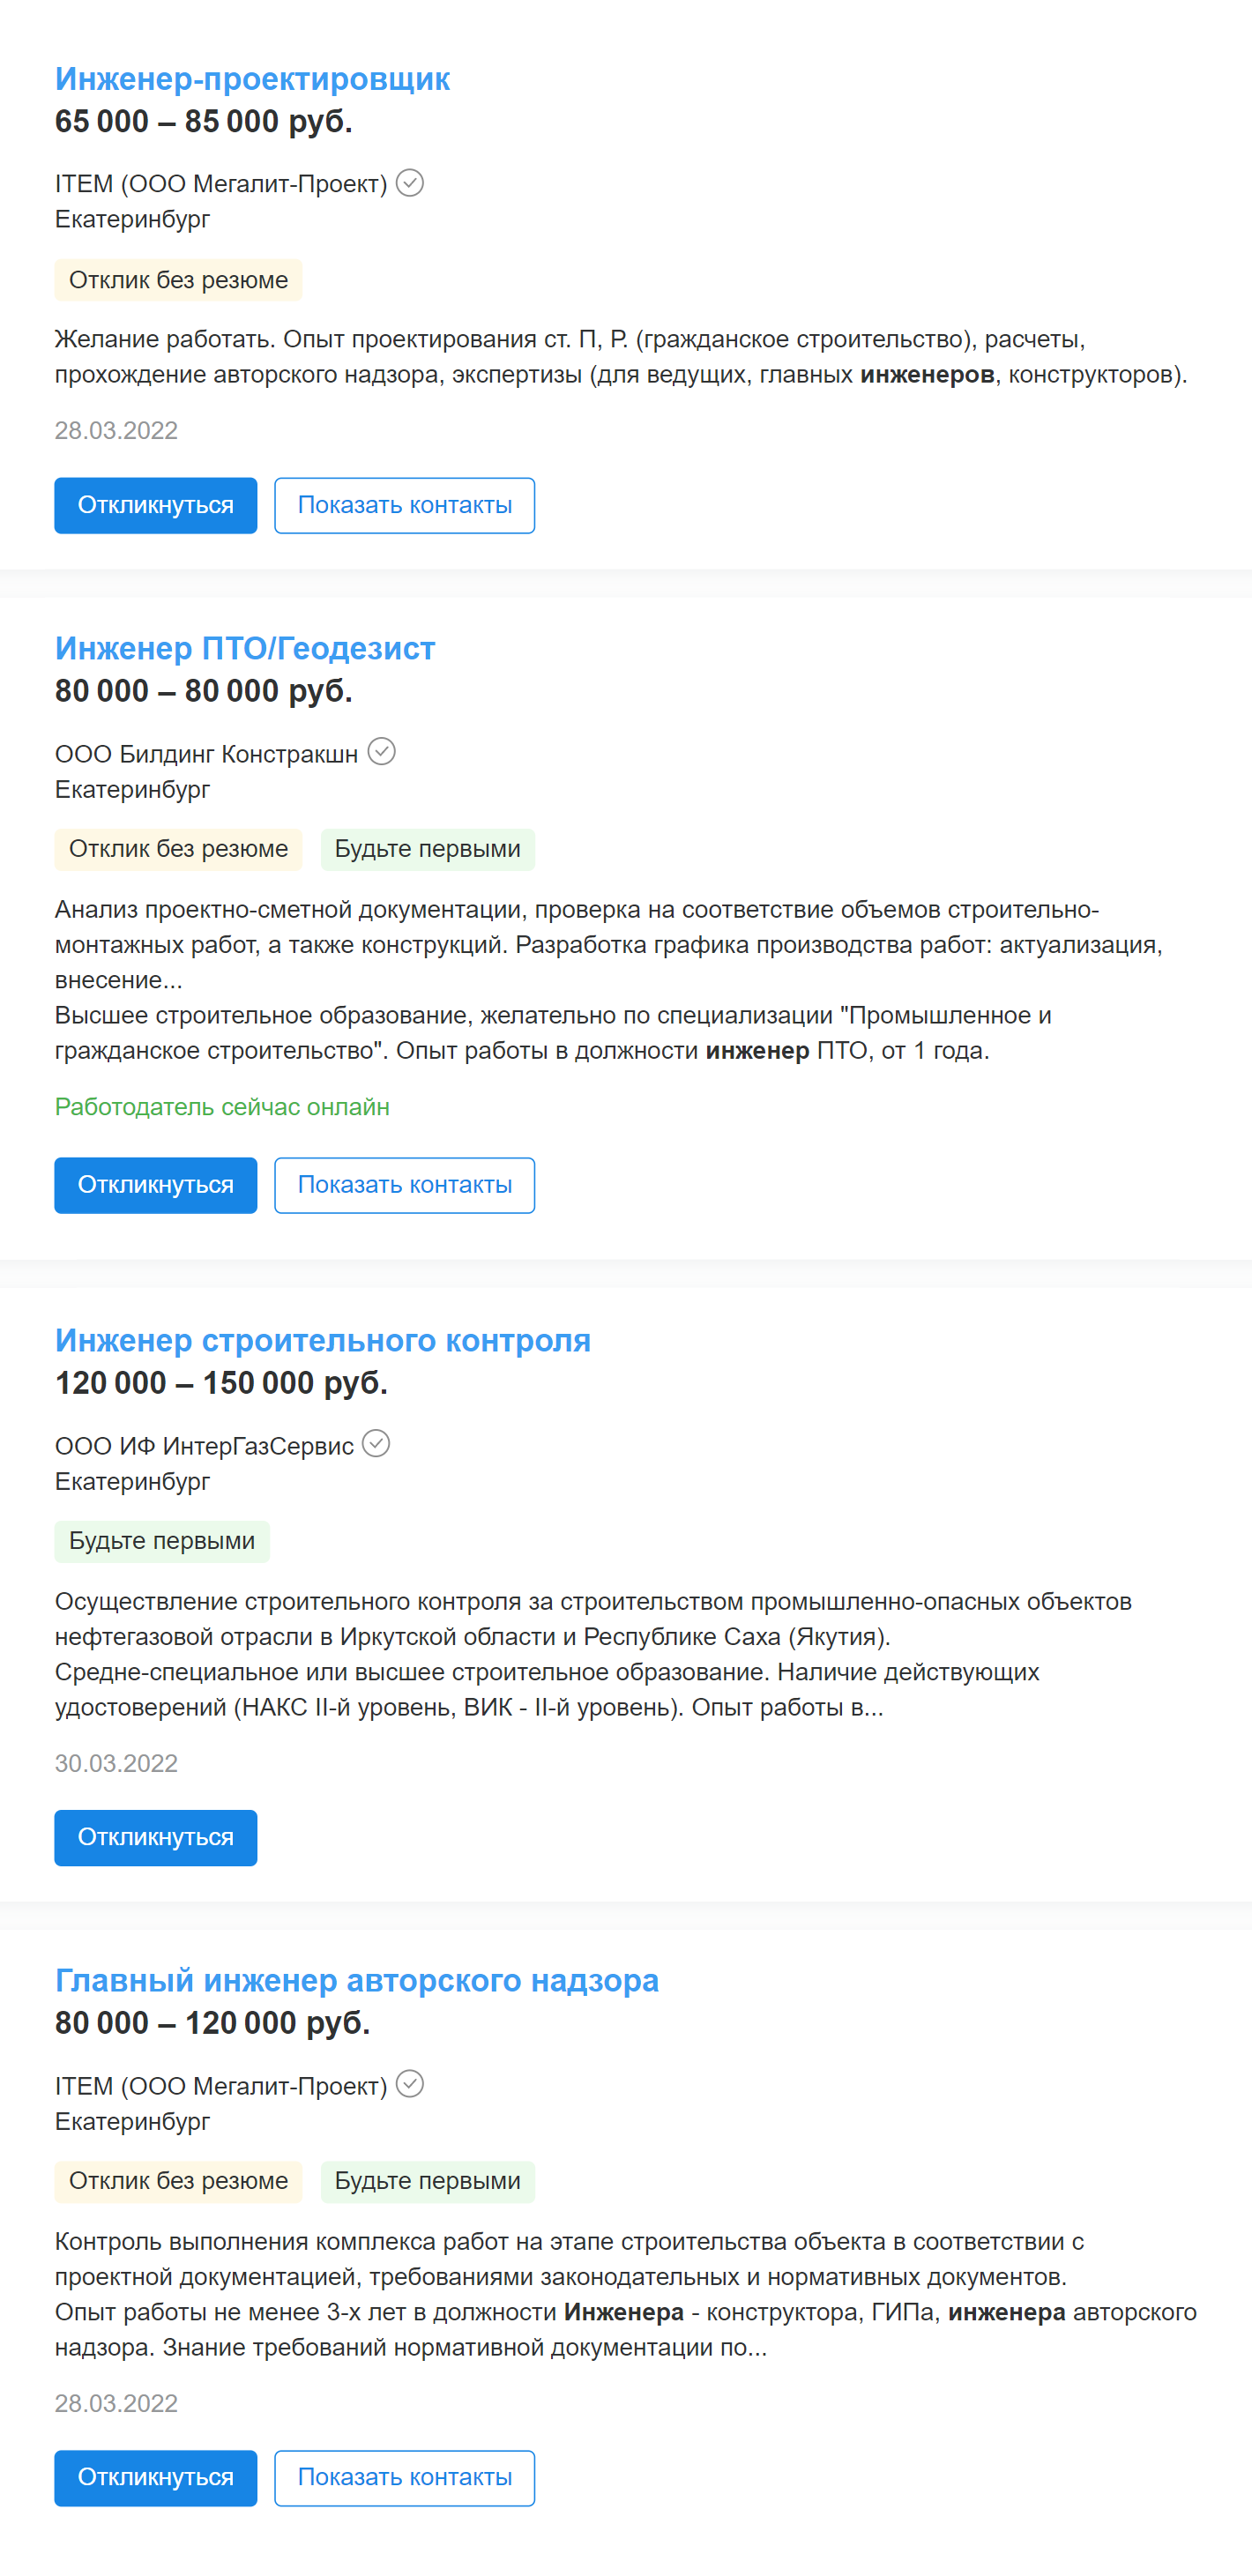 Доход в сфере строительства выше: специалисты и инженеры получают 60⁠—⁠80 тысяч рублей